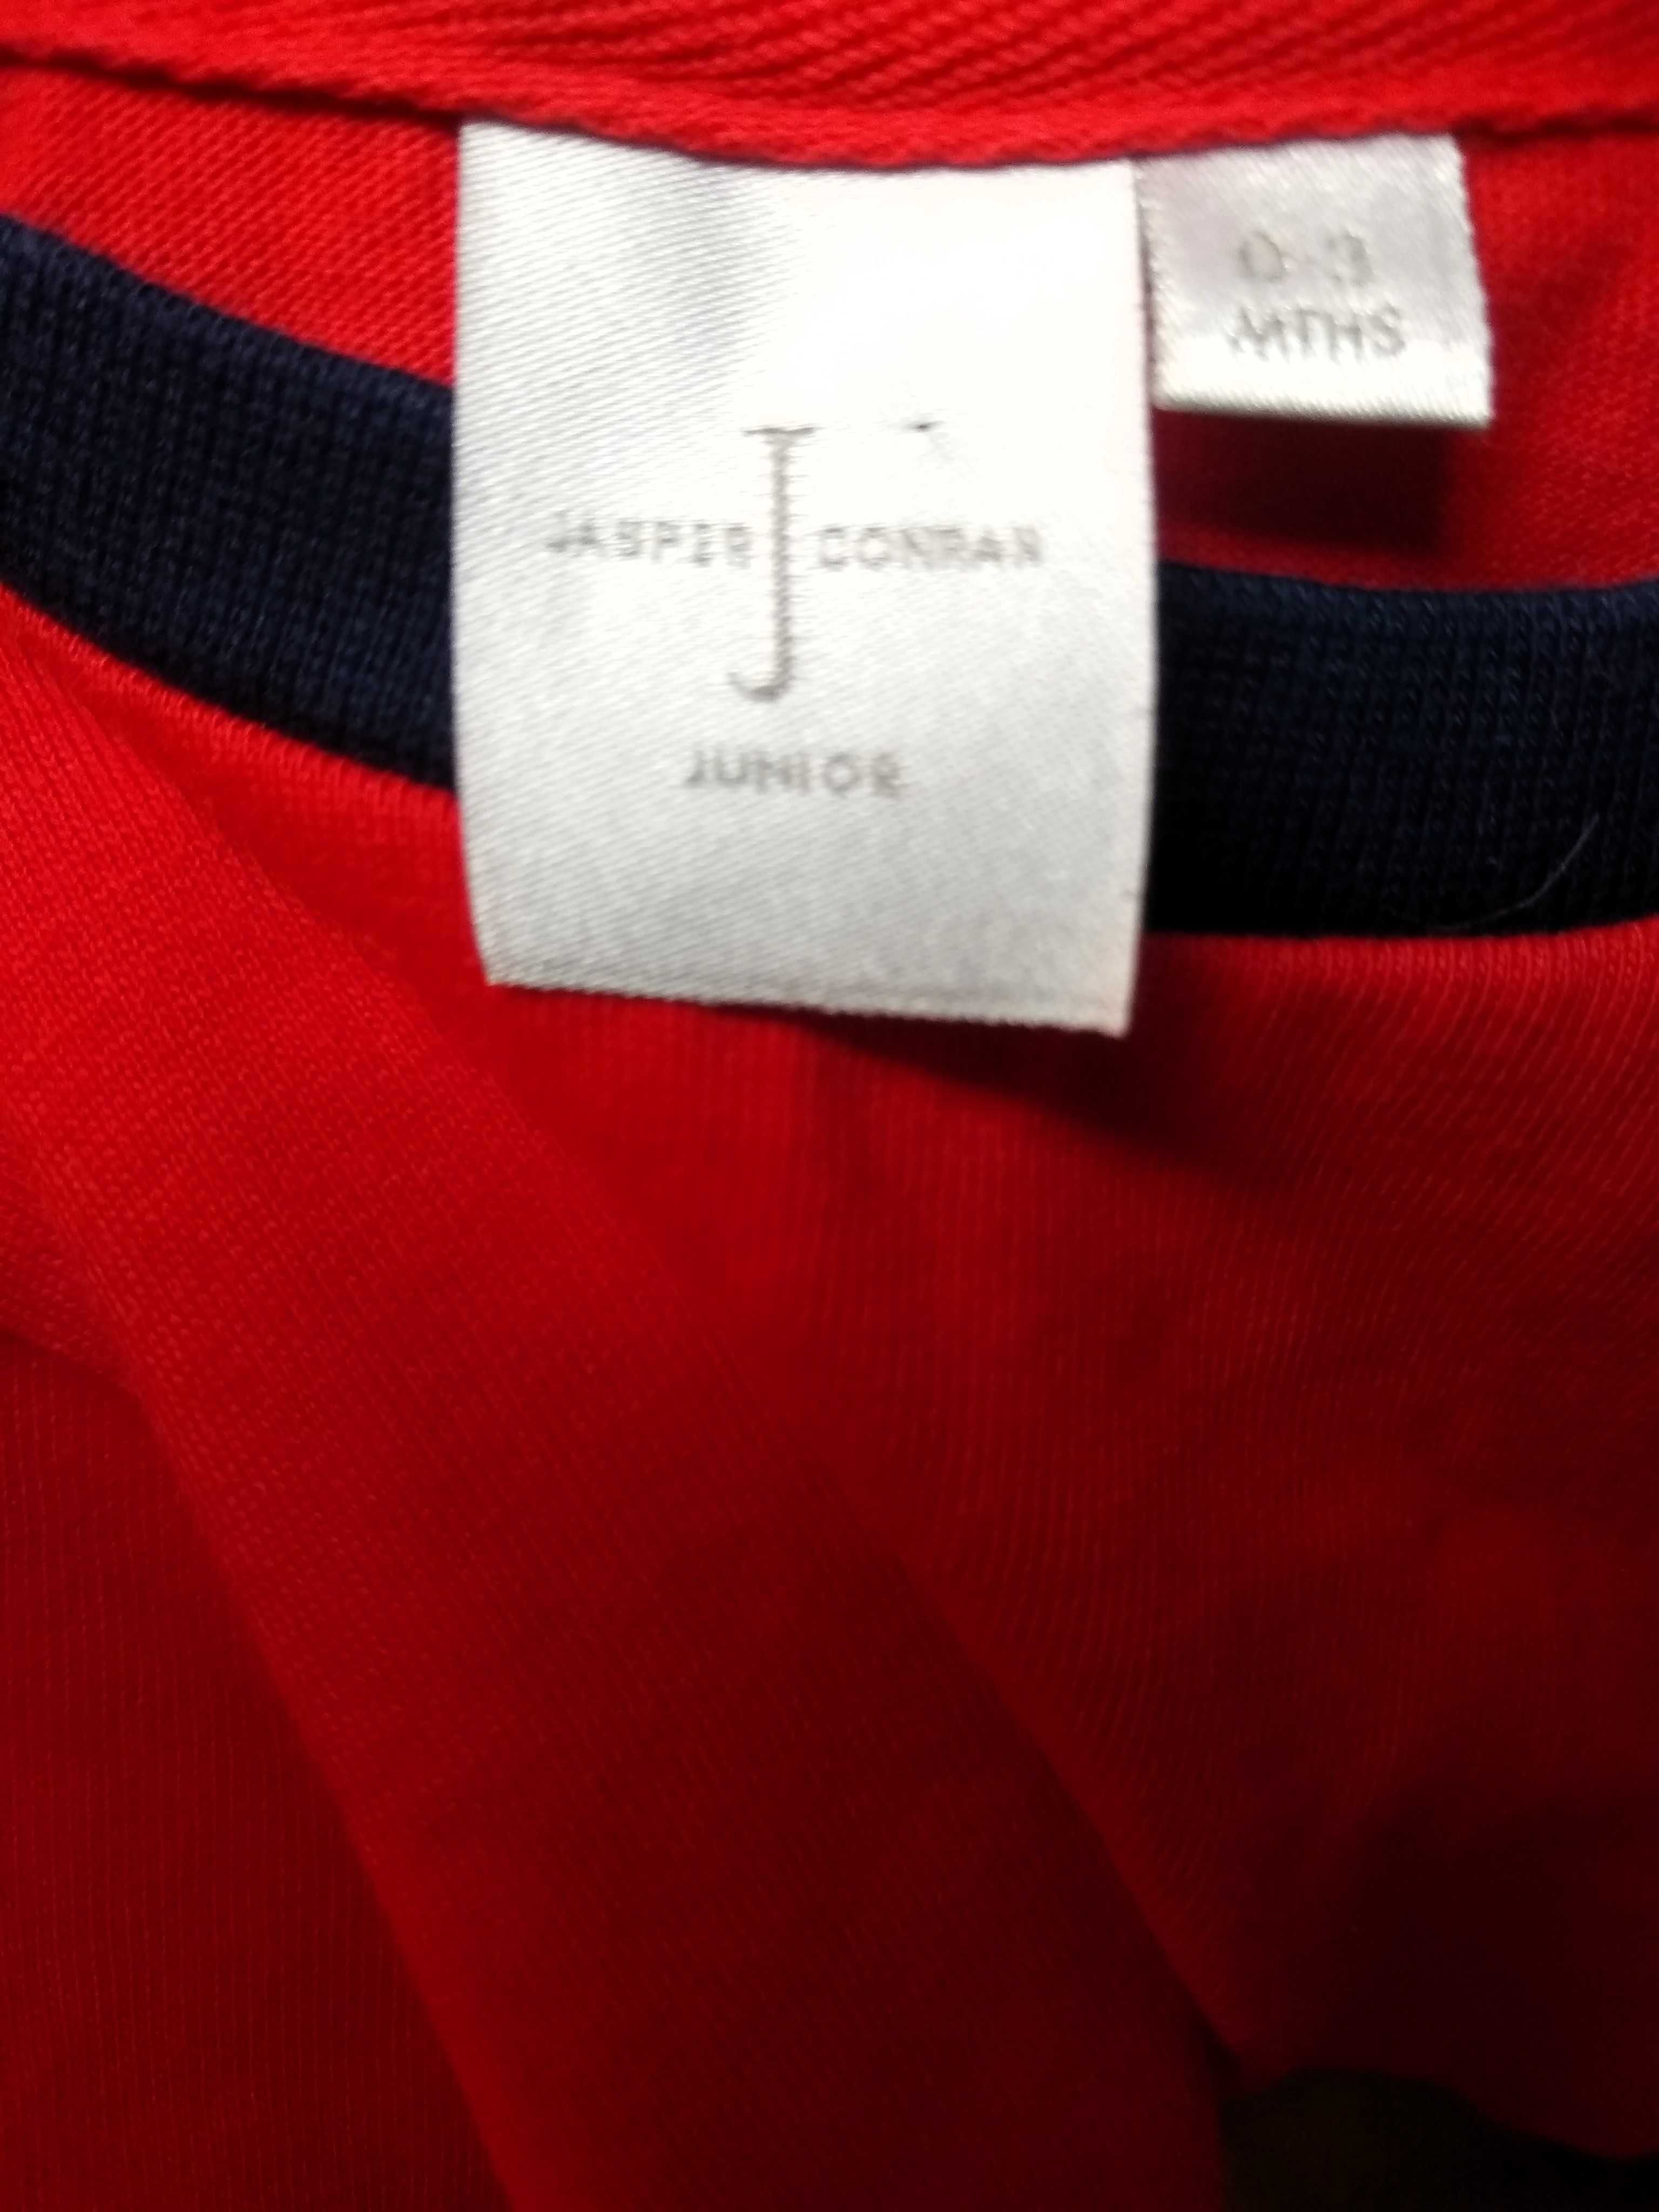 T-shirt czerwony bawełniany Jasper Conran rozmiar 62cm